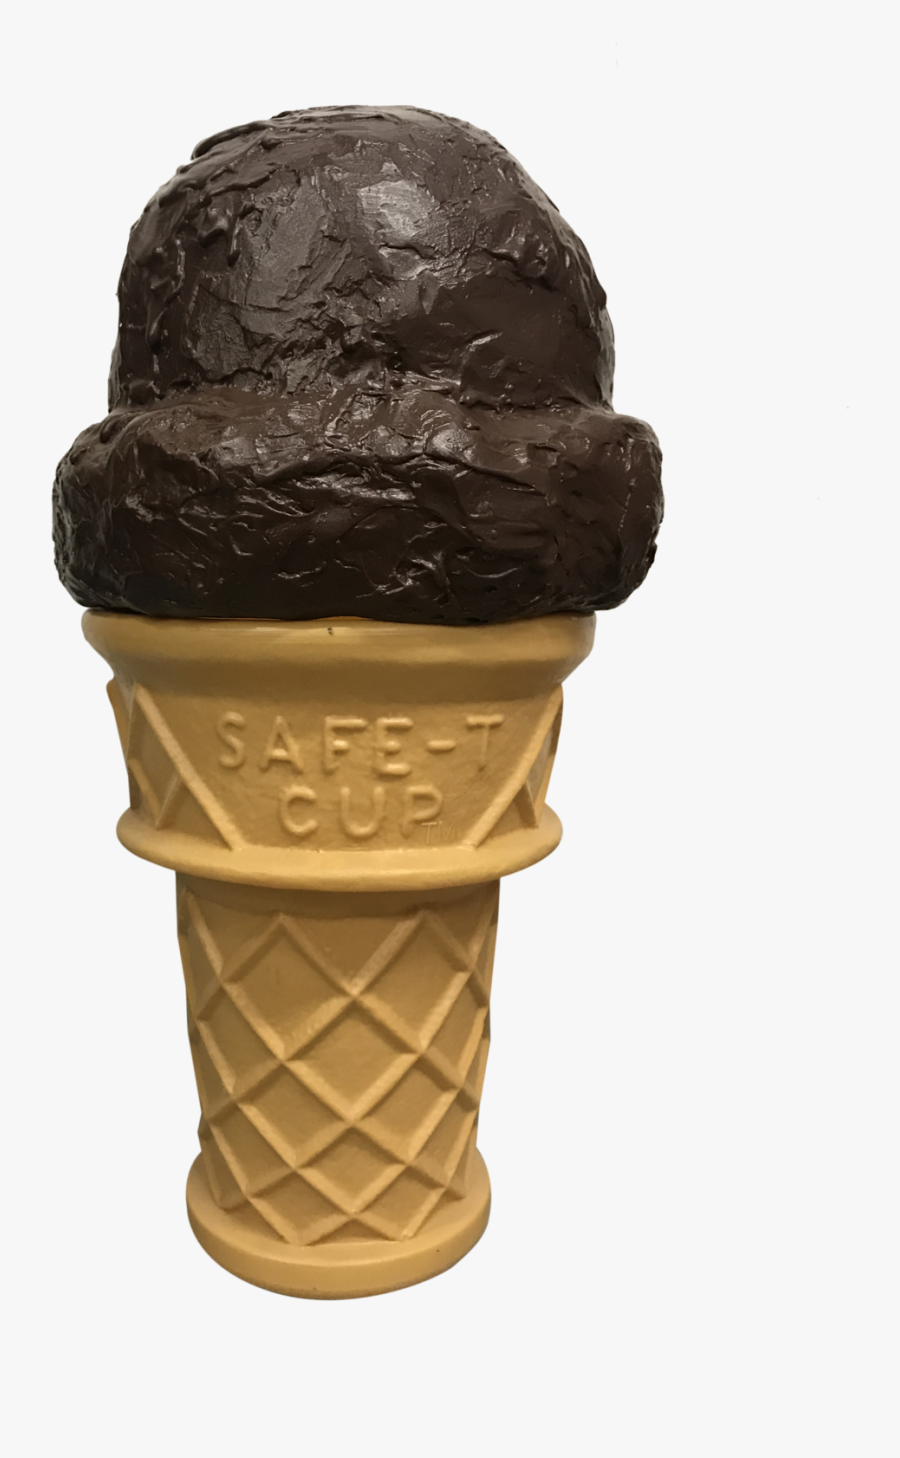 Clip Art Chocolate Ice Cream Cone - Ice Cream Cone, Transparent Clipart